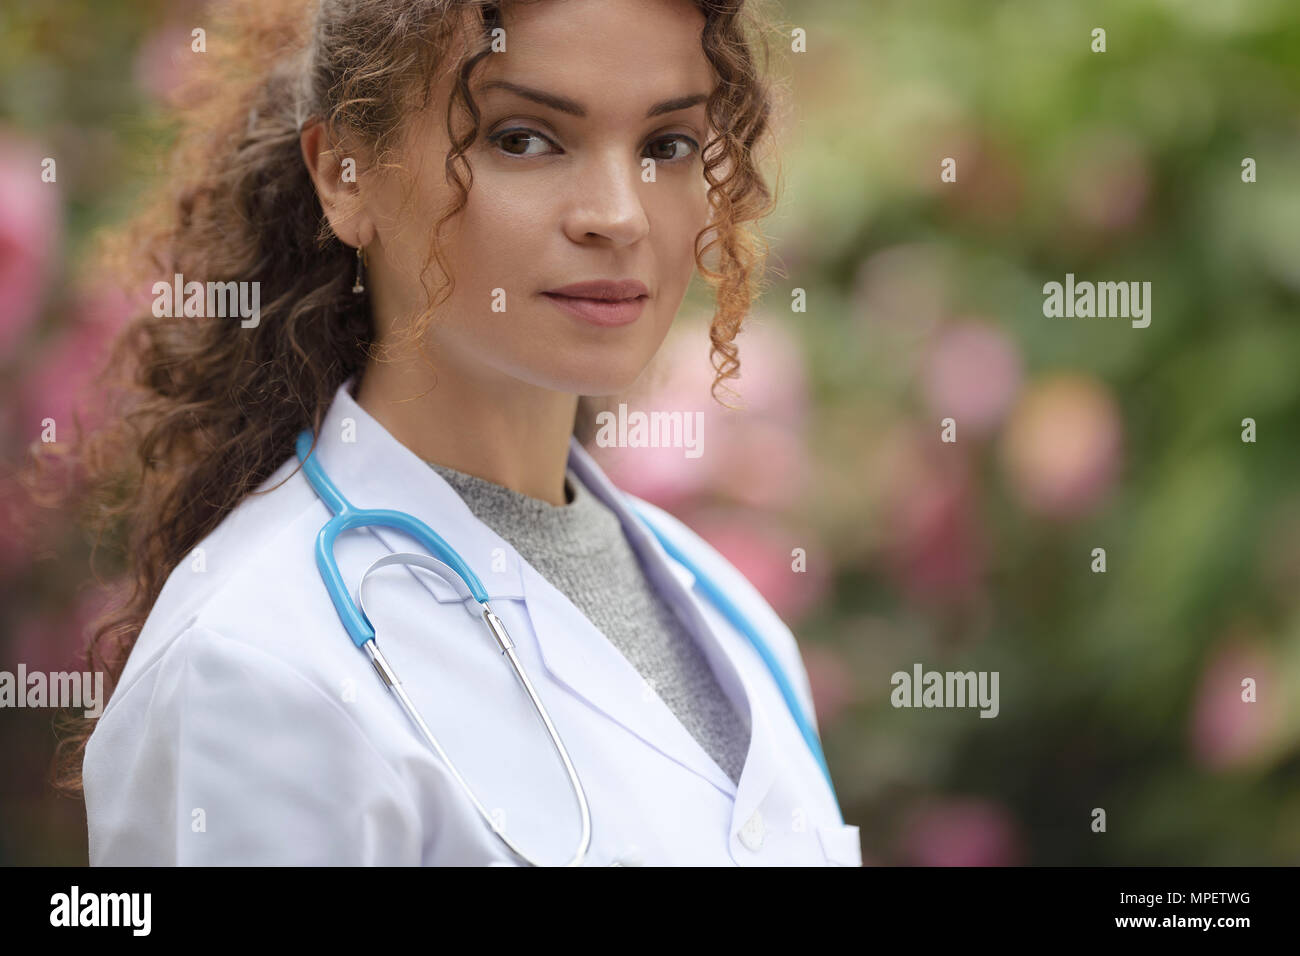 Portrait d'une jeune femme, médecin, médecin, médecin en blouse de laboratoire en plein air naturel Banque D'Images